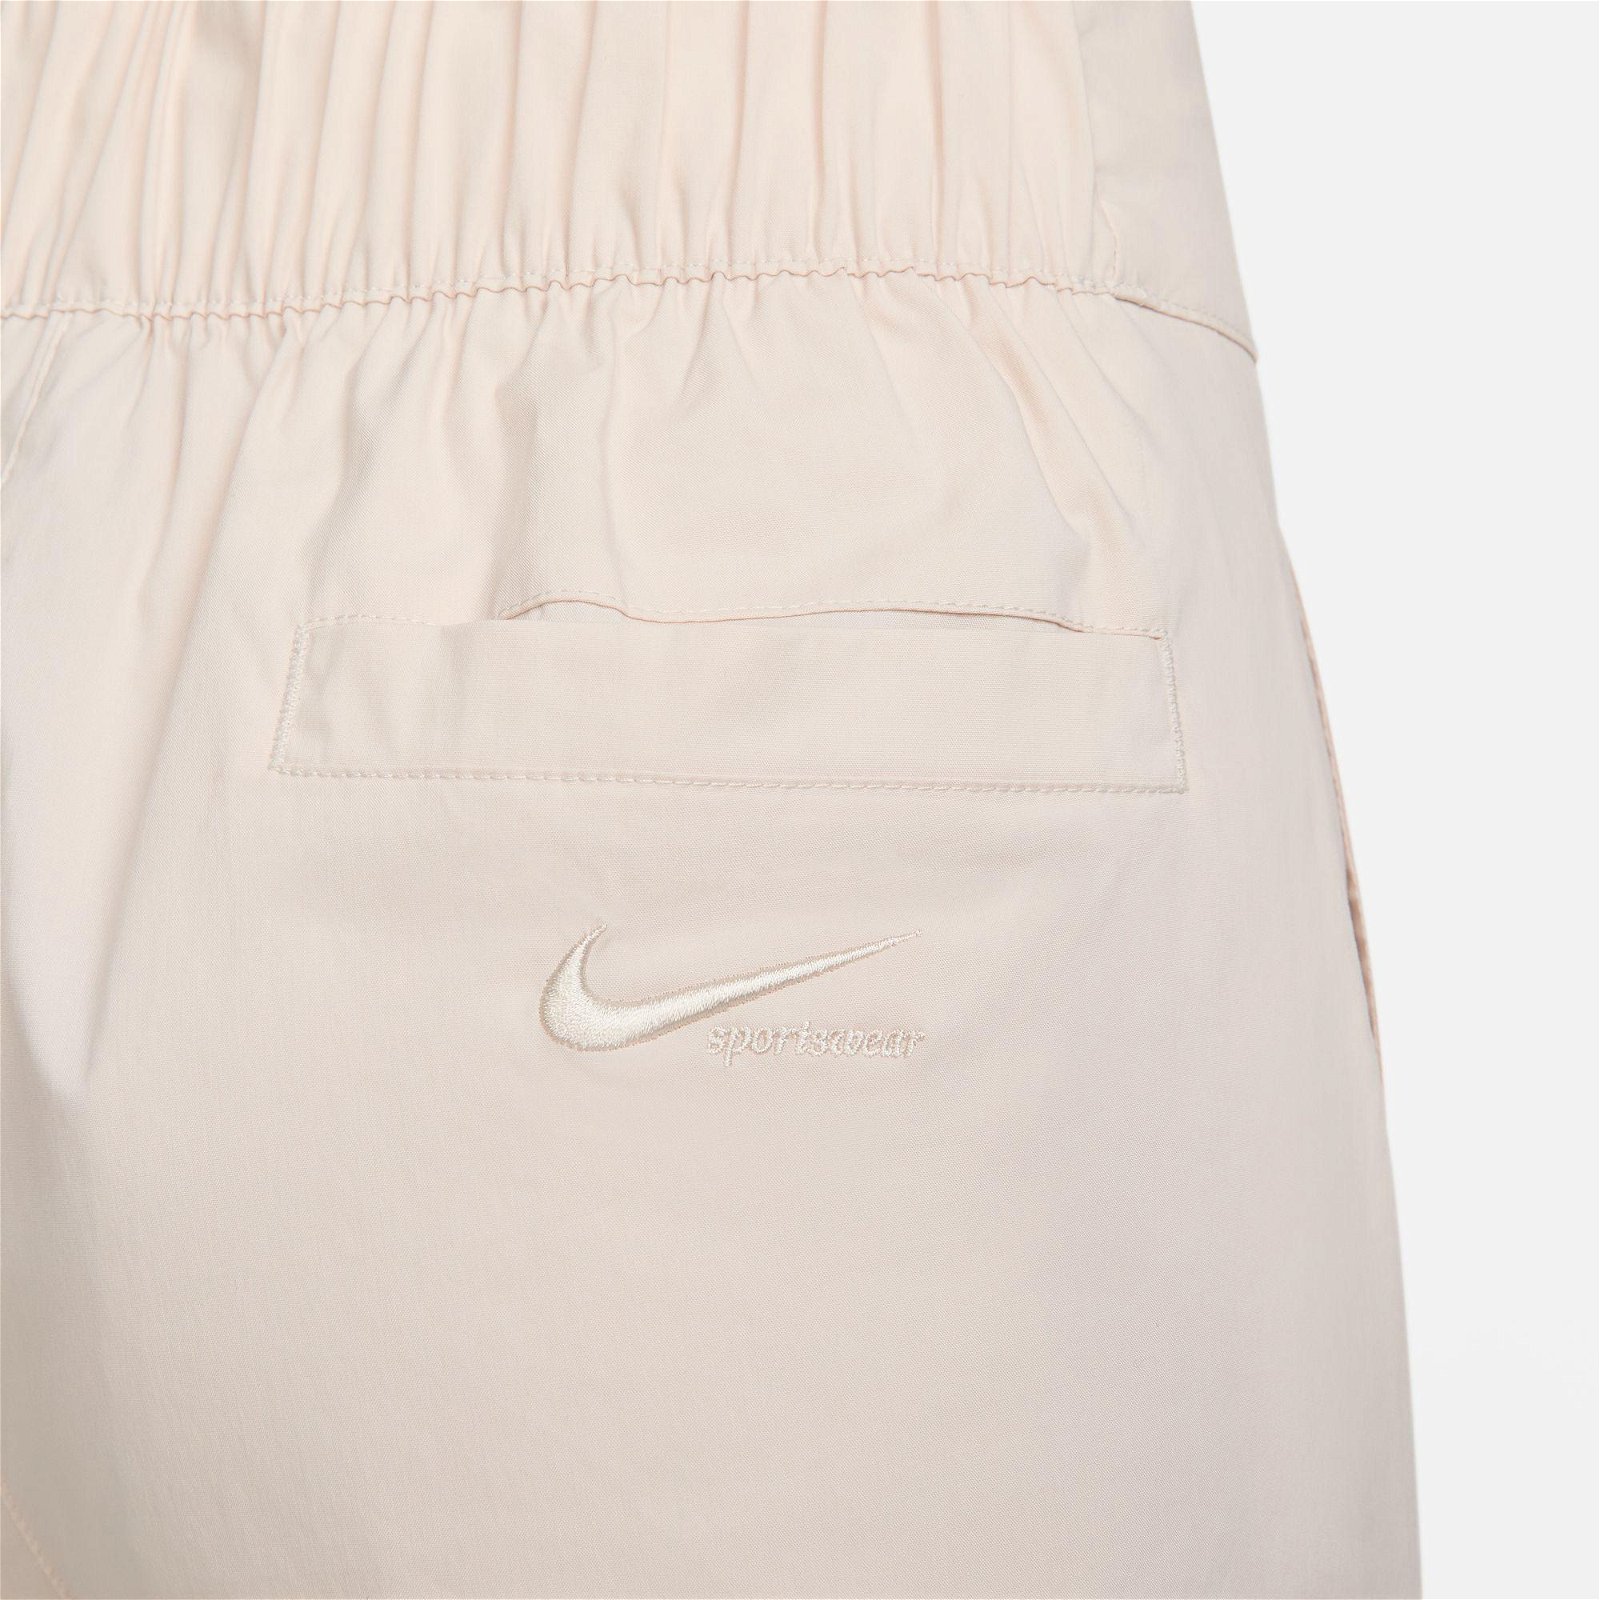 Nike Sportswear Collection Woven Trouser Kadın Krem Rengi Eşofman Altı